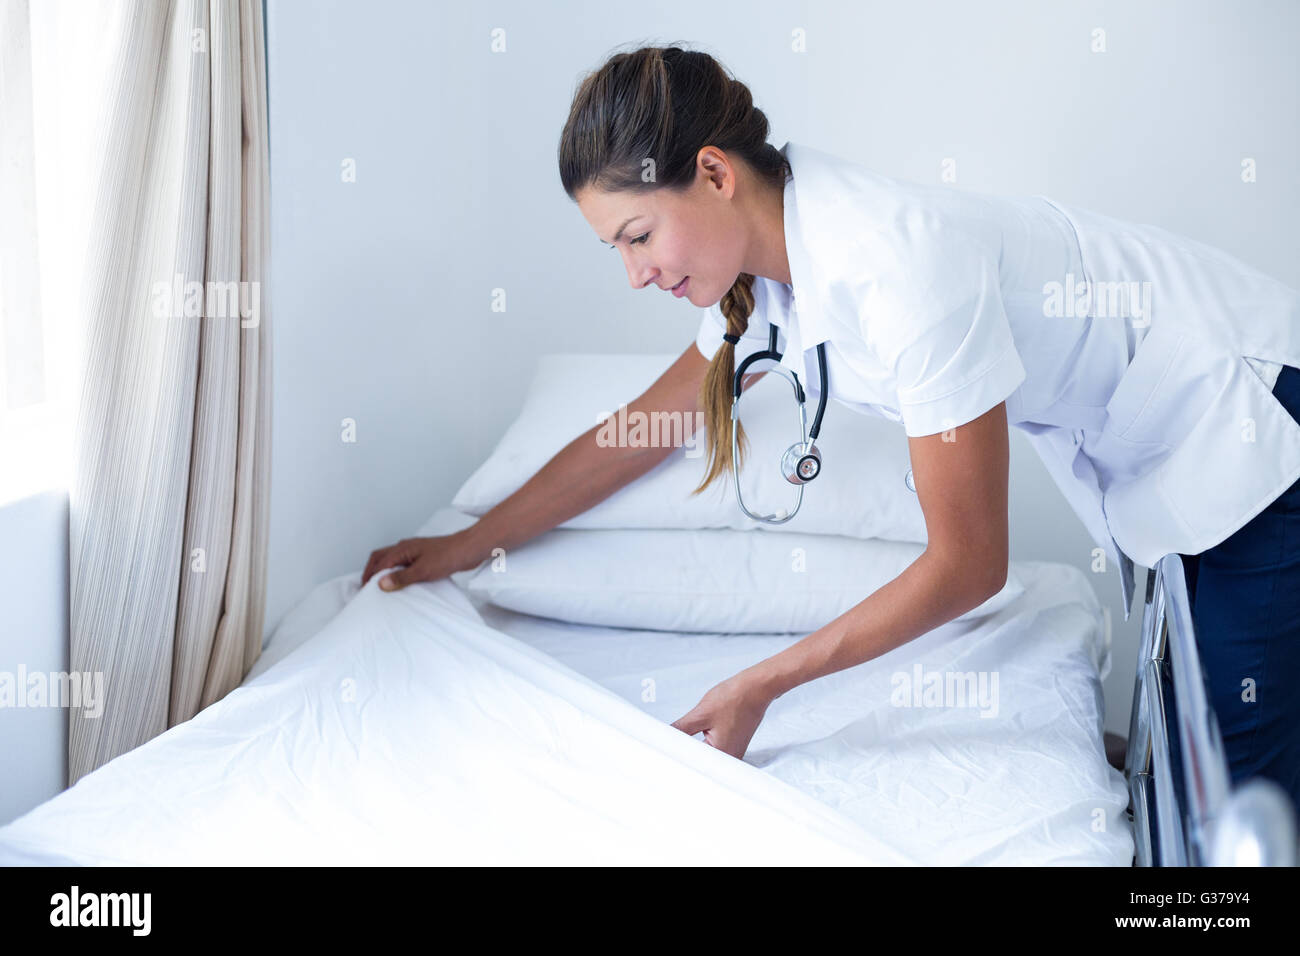 Подготовка постели. Заправленная кровать в больнице. Медсестра меняет постельное белье. Подготовка постели пациенту.